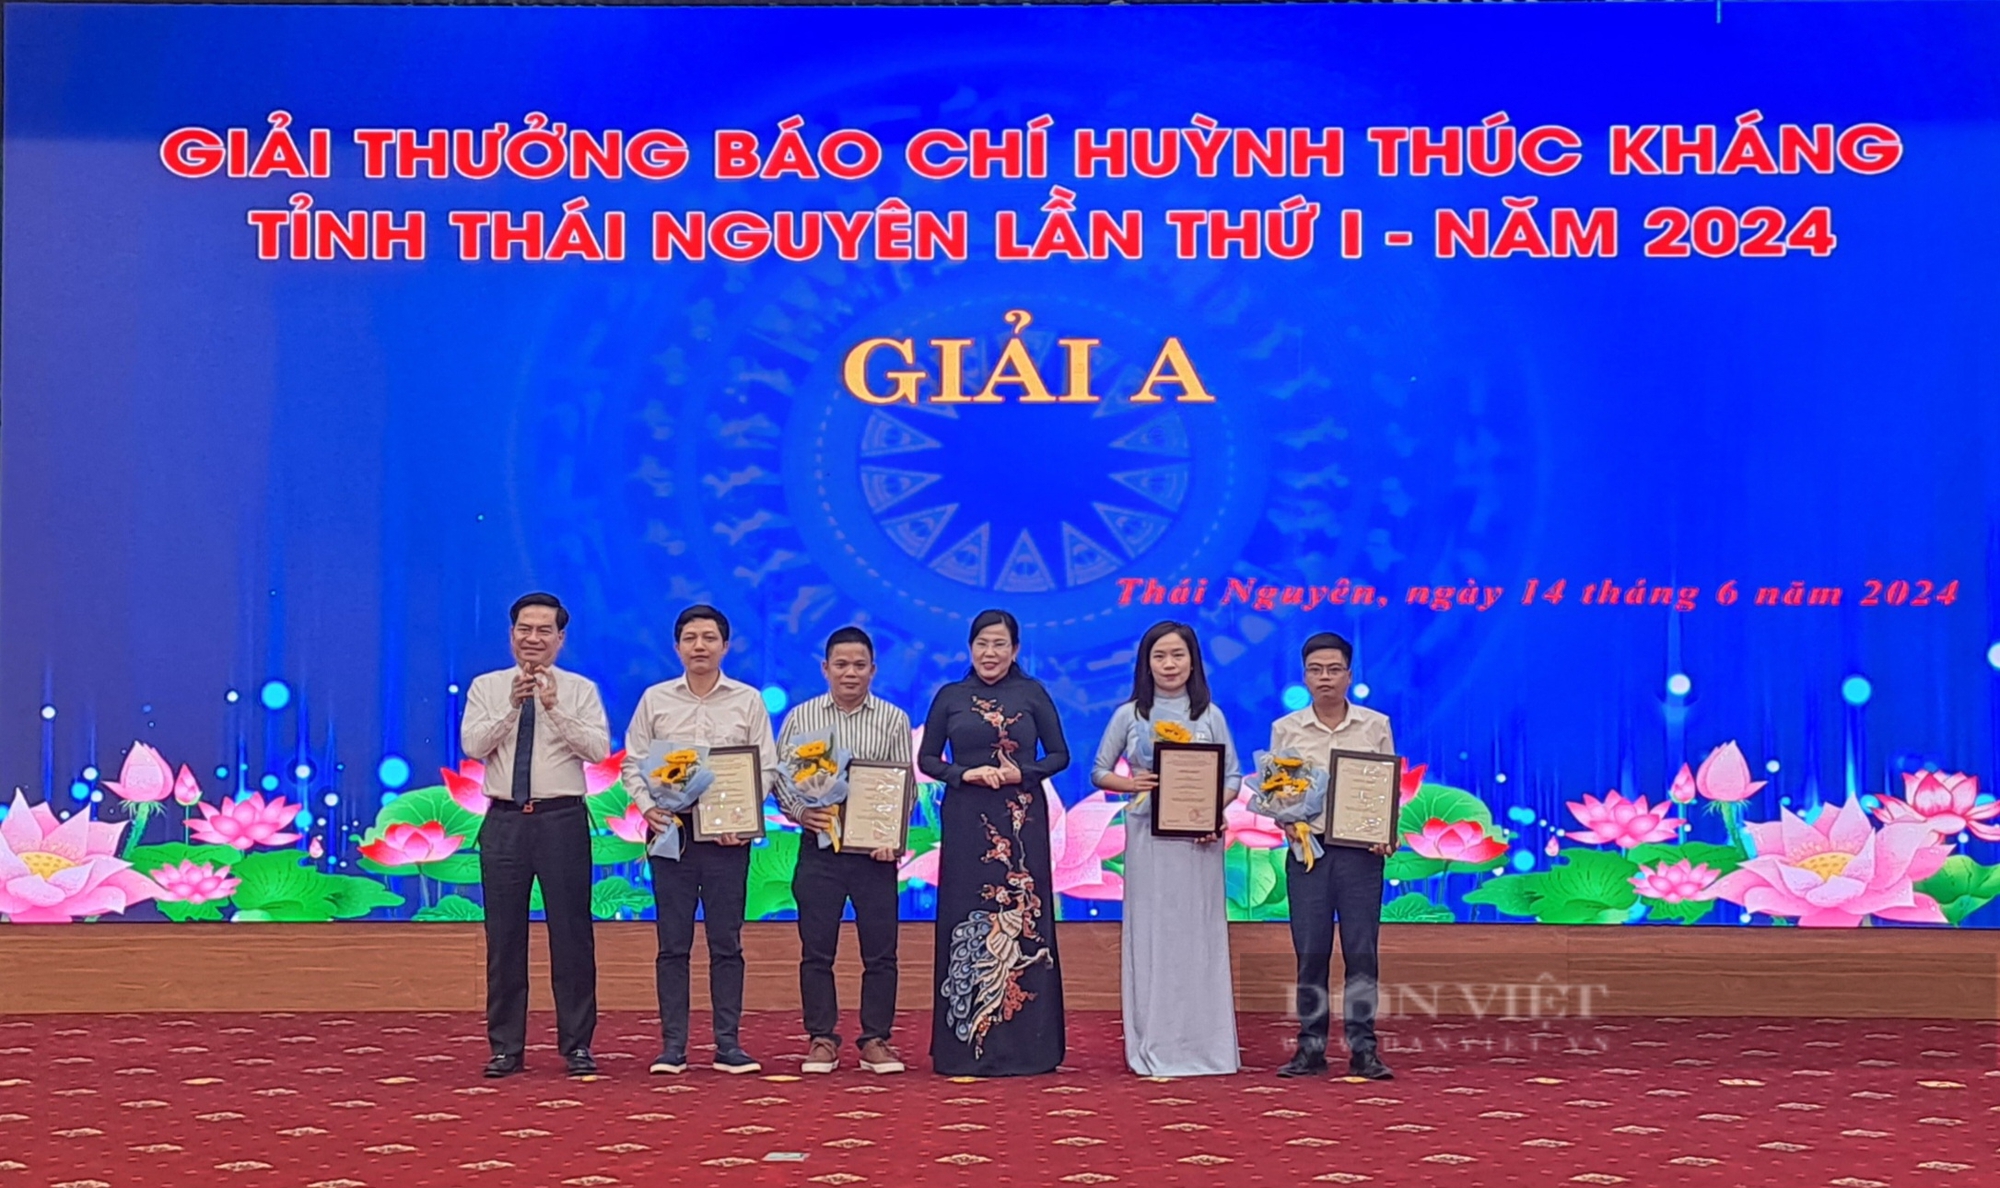 Thái Nguyên: Vinh danh 37 tác phẩm xuất sắc đoạt giải báo chí Huỳnh Thúc Kháng lần thứ I năm 2024 - Ảnh 3.